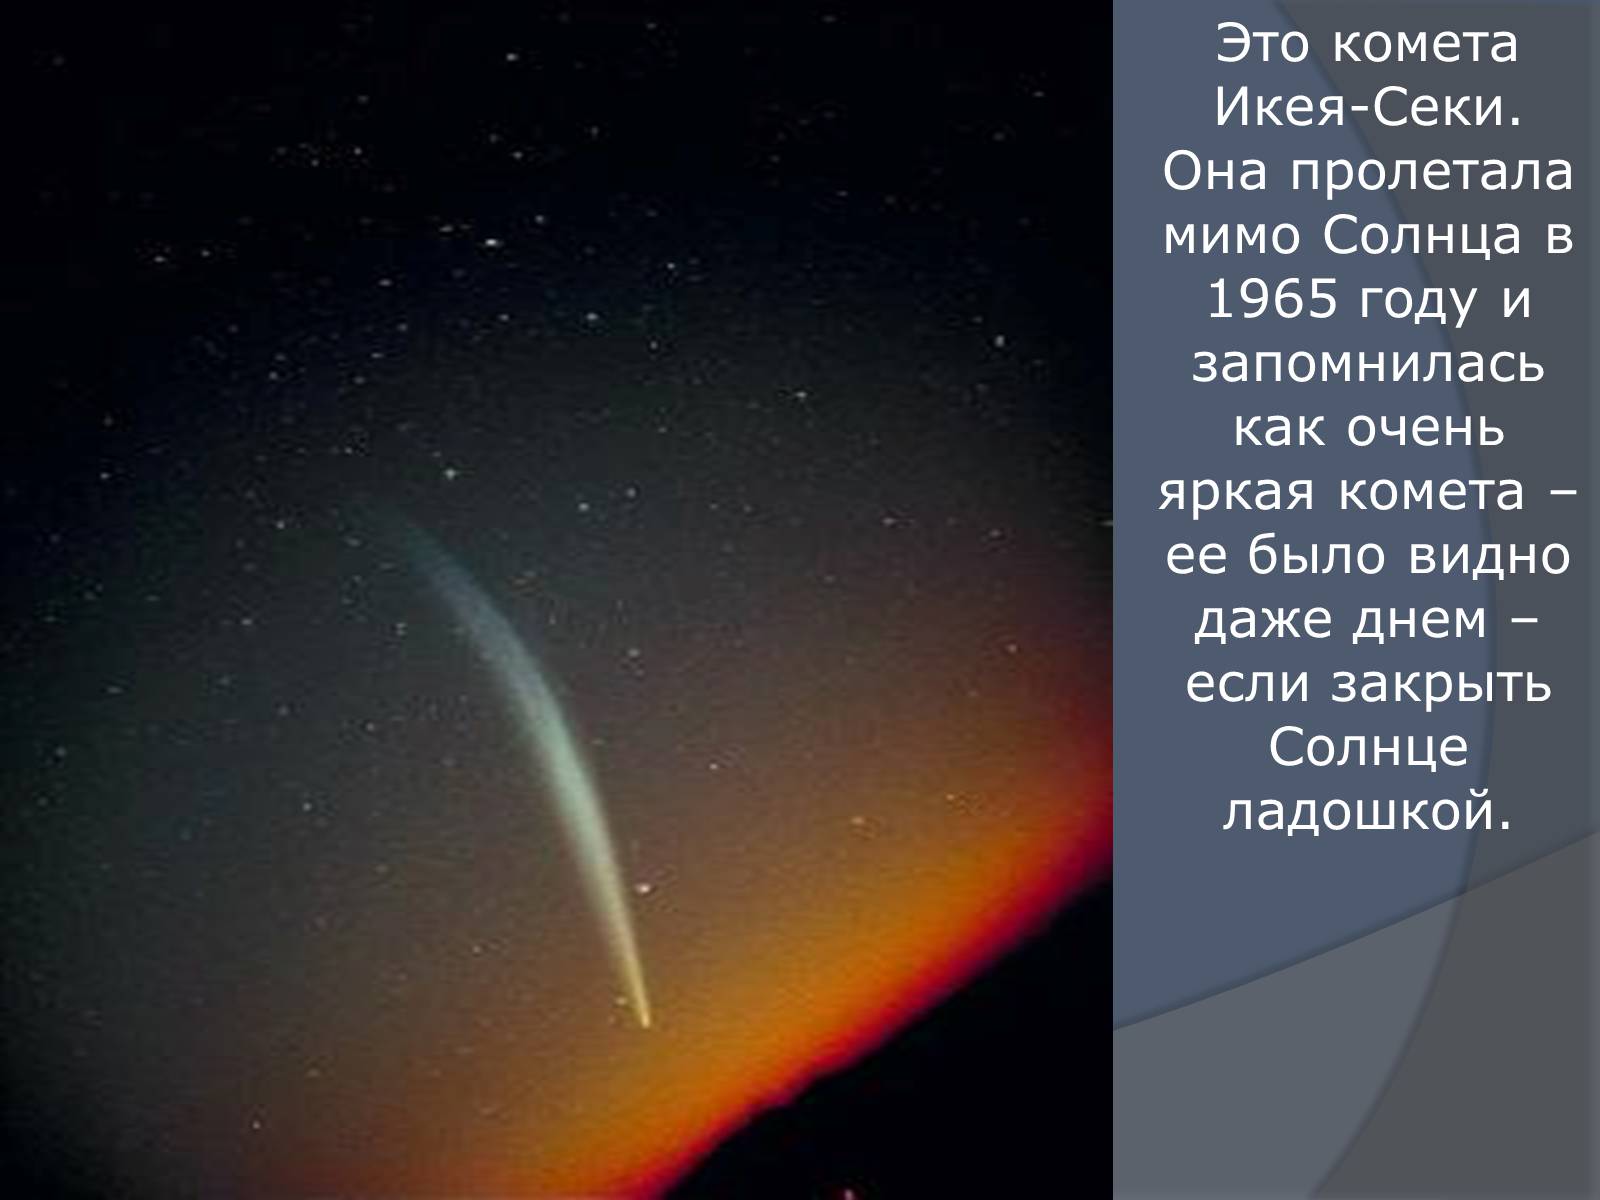 Будет ярче чем комета текст. Комета икеа-секи. Комета Икейя- секи. В каком году мимо земли пролетала Комета. Когда будет пролетать Комета.